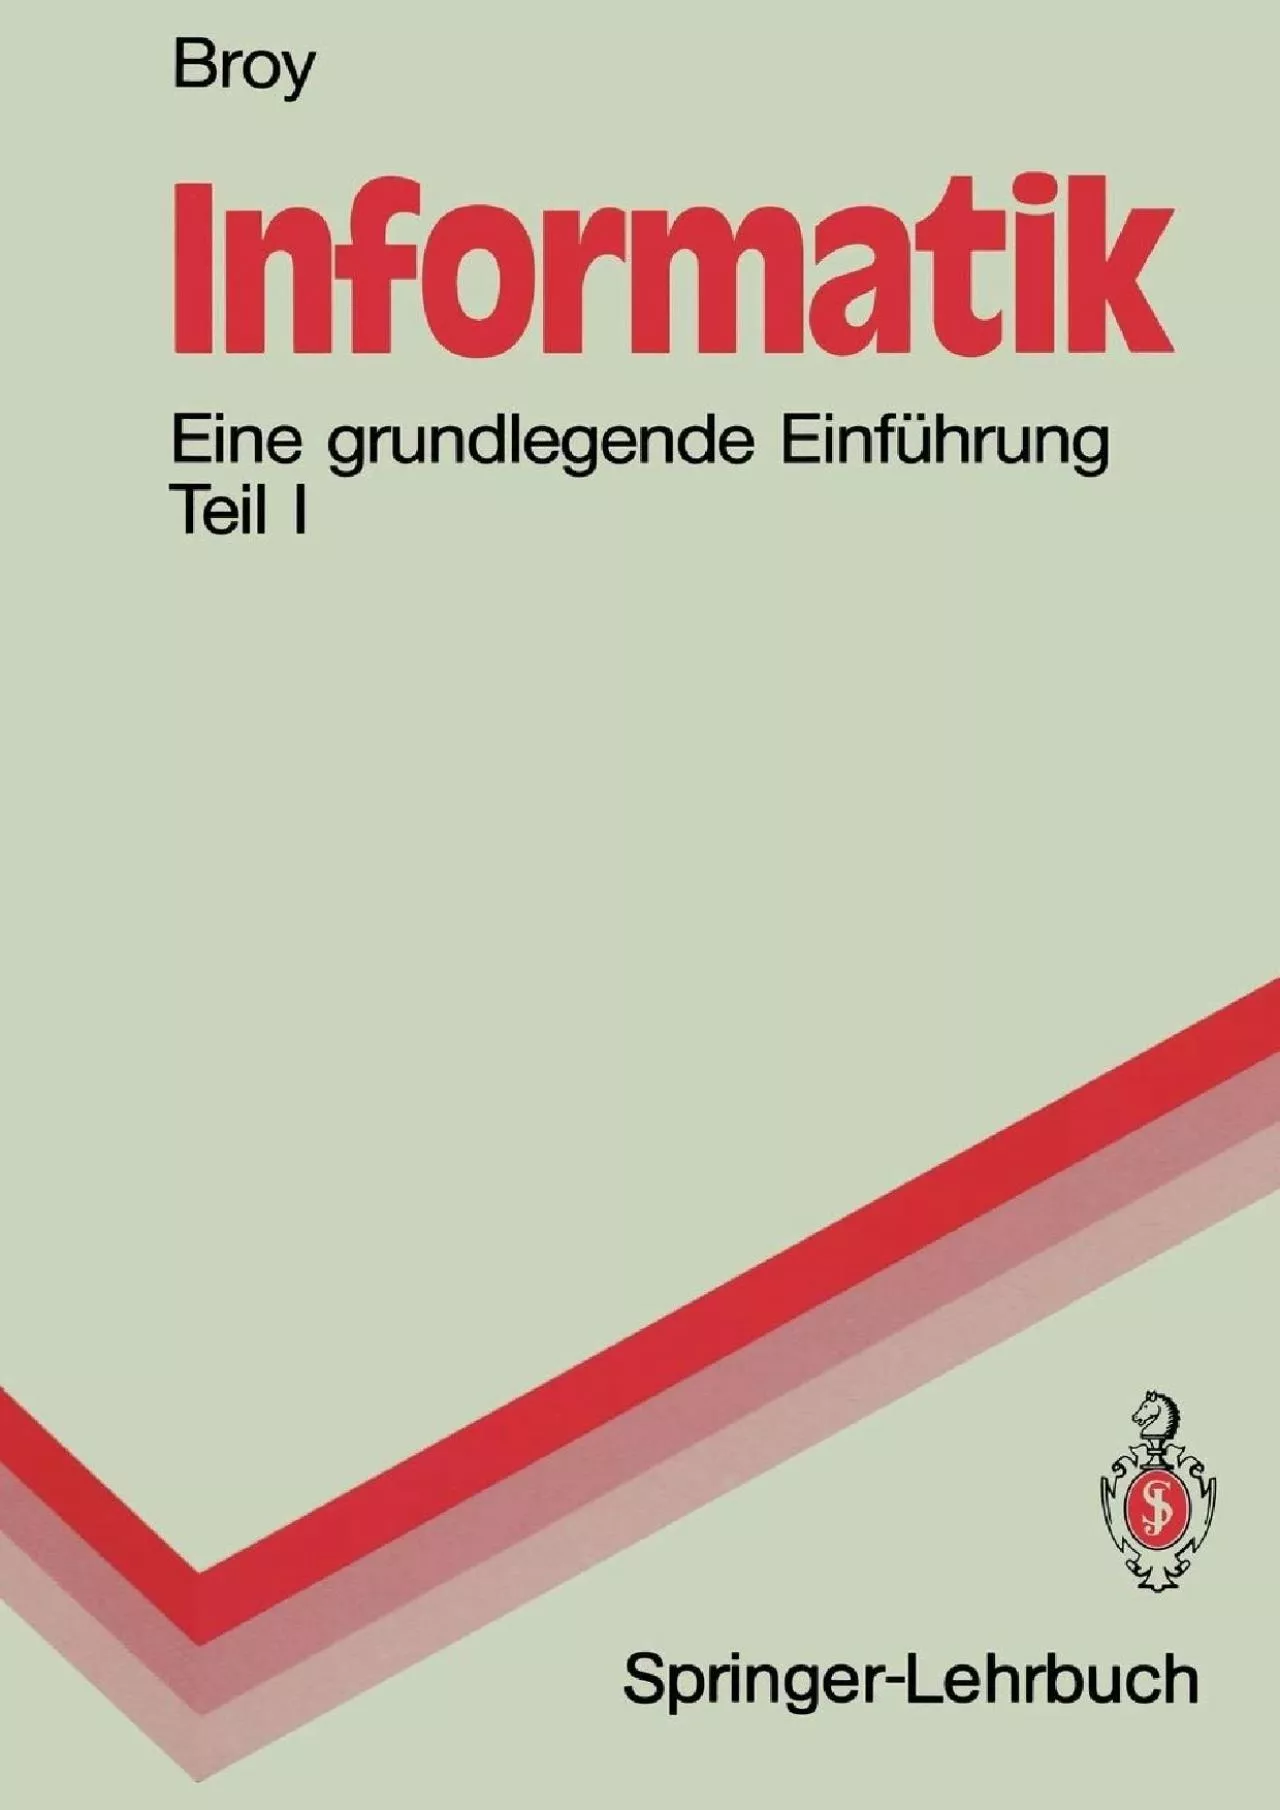 [READ]-Informatik: Eine grundlegende Einführung Teil I. Problemnahe Programmierung (Springer-Lehrbuch)